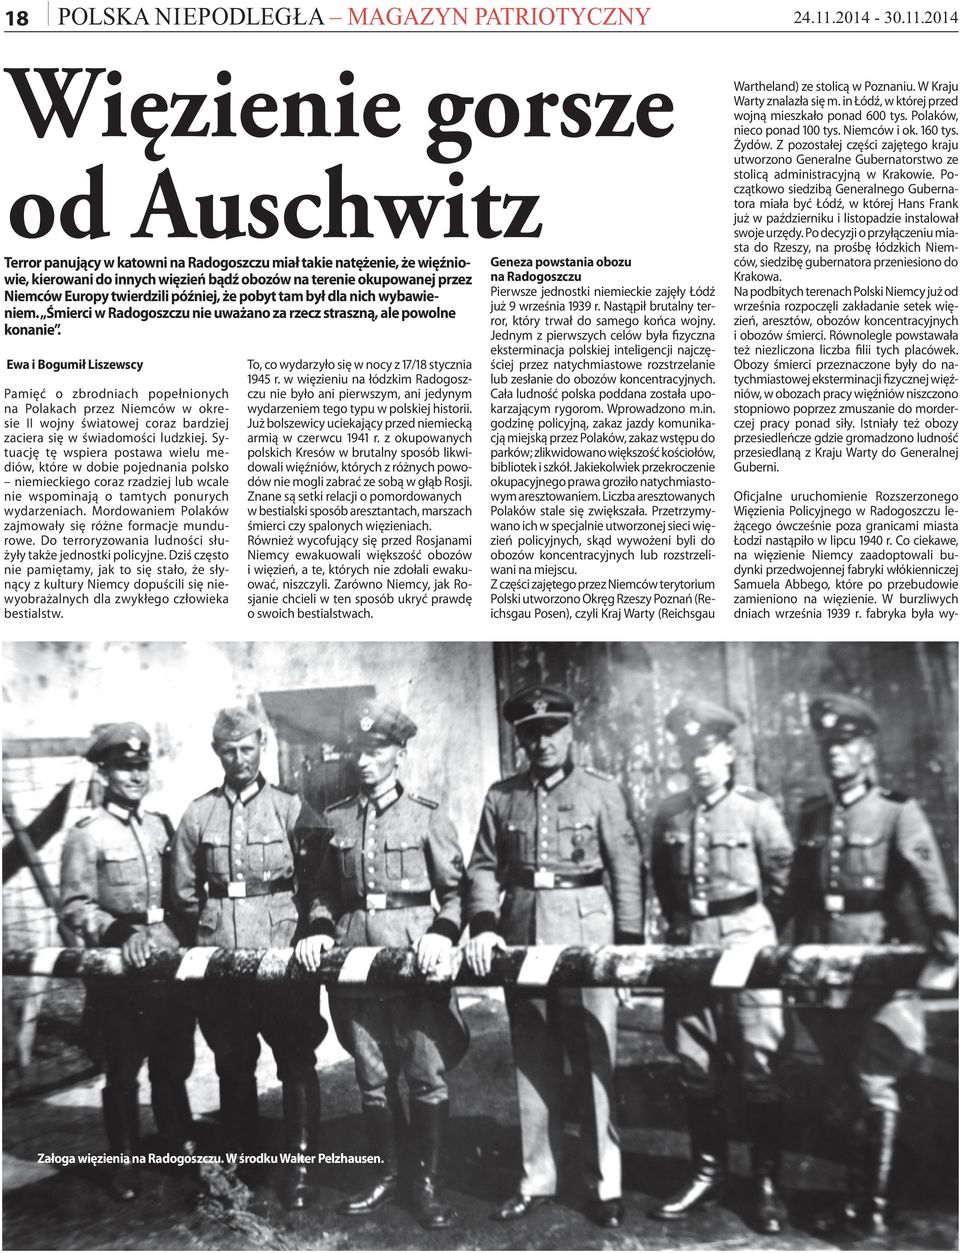 Ewa i Bogumił Liszewscy Pamięć o zbrodniach popełnionych na Polakach przez Niemców w okresie II wojny światowej coraz bardziej zaciera się w świadomości ludzkiej.